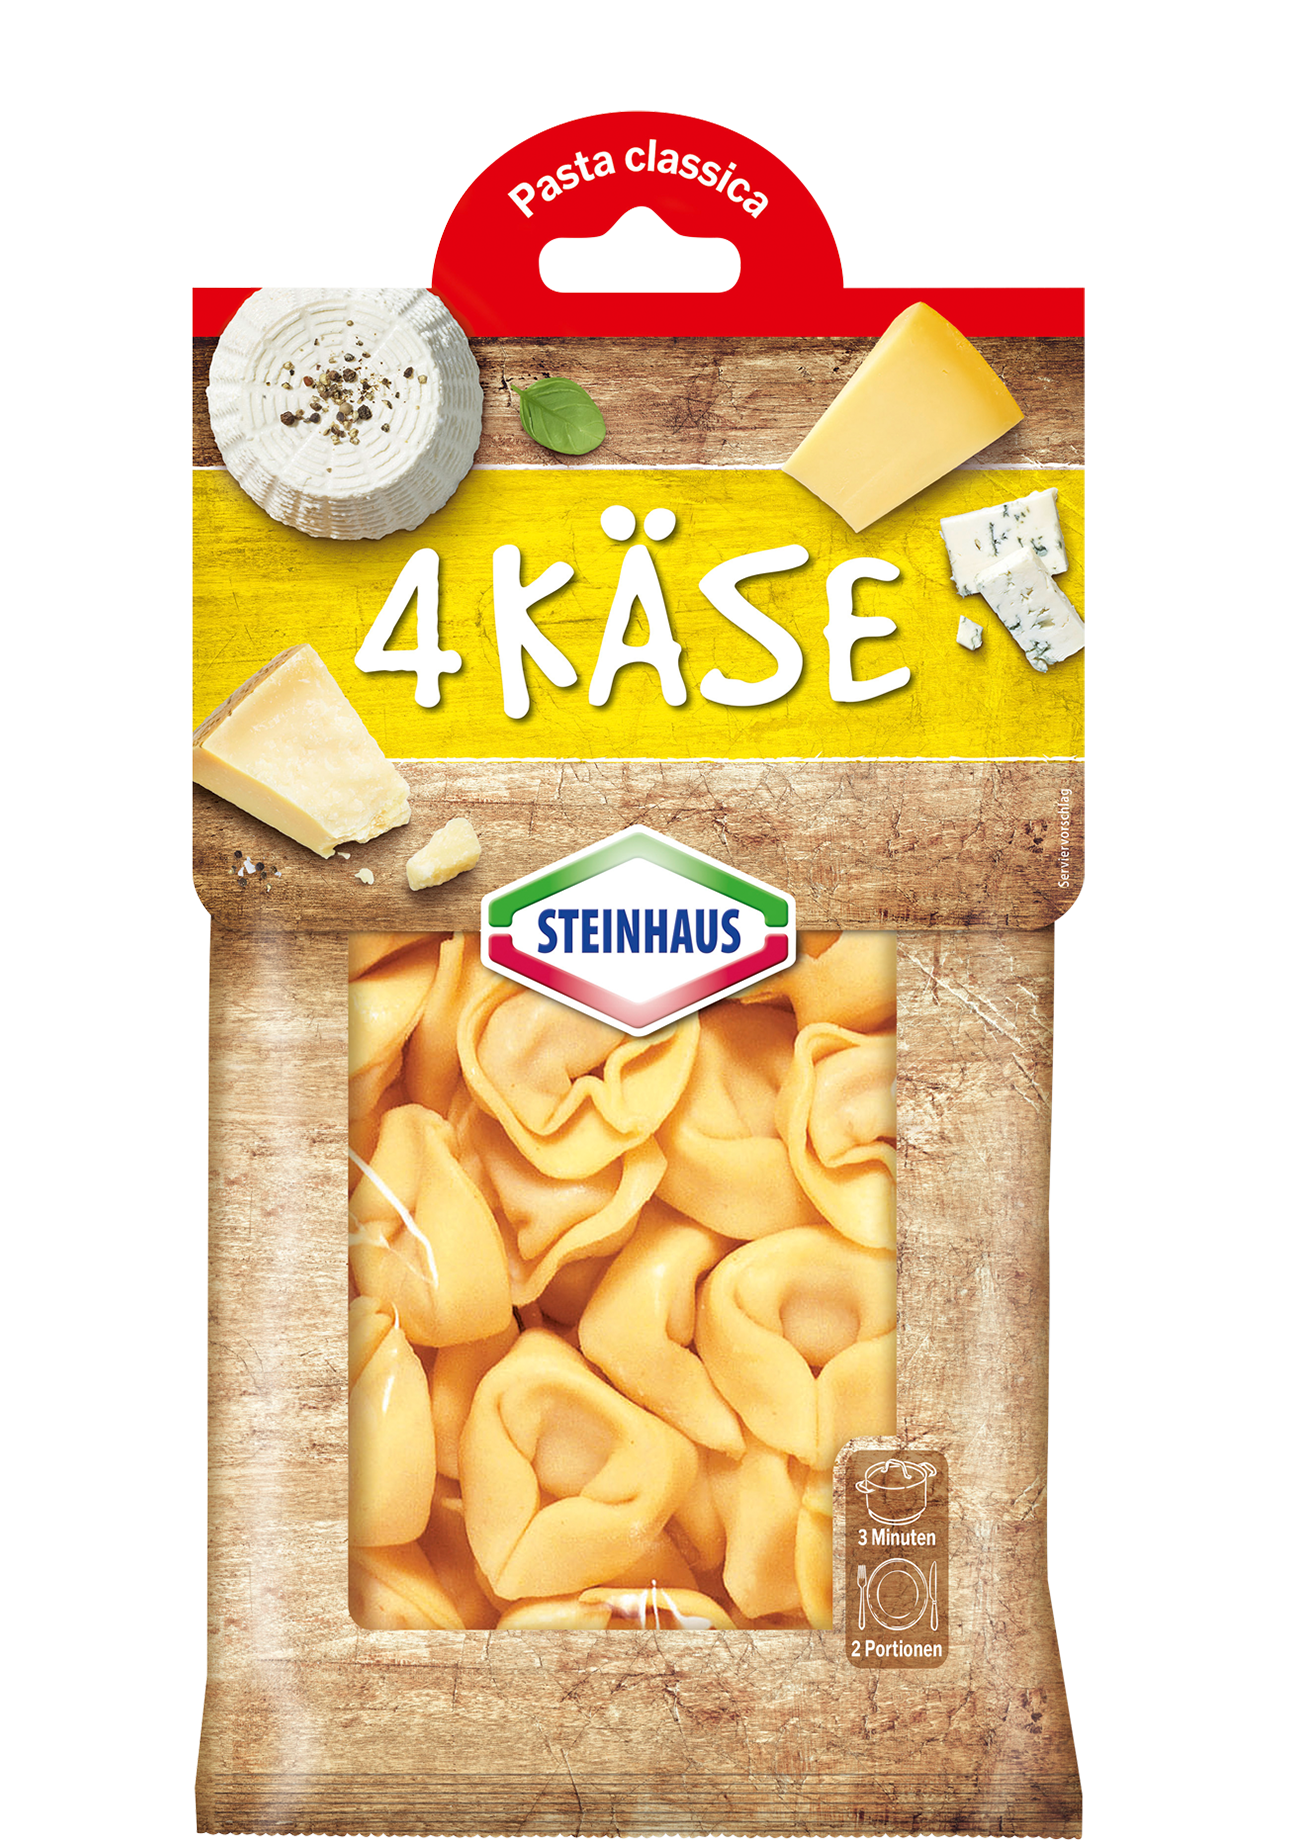 Cheese tortelloni – Cremig gefüllte frische Tortelloni mit Gouda, Ricotta, Gorgonzola und pikantem Grana Padano – das ist Pastagenuss für jeden Tag.